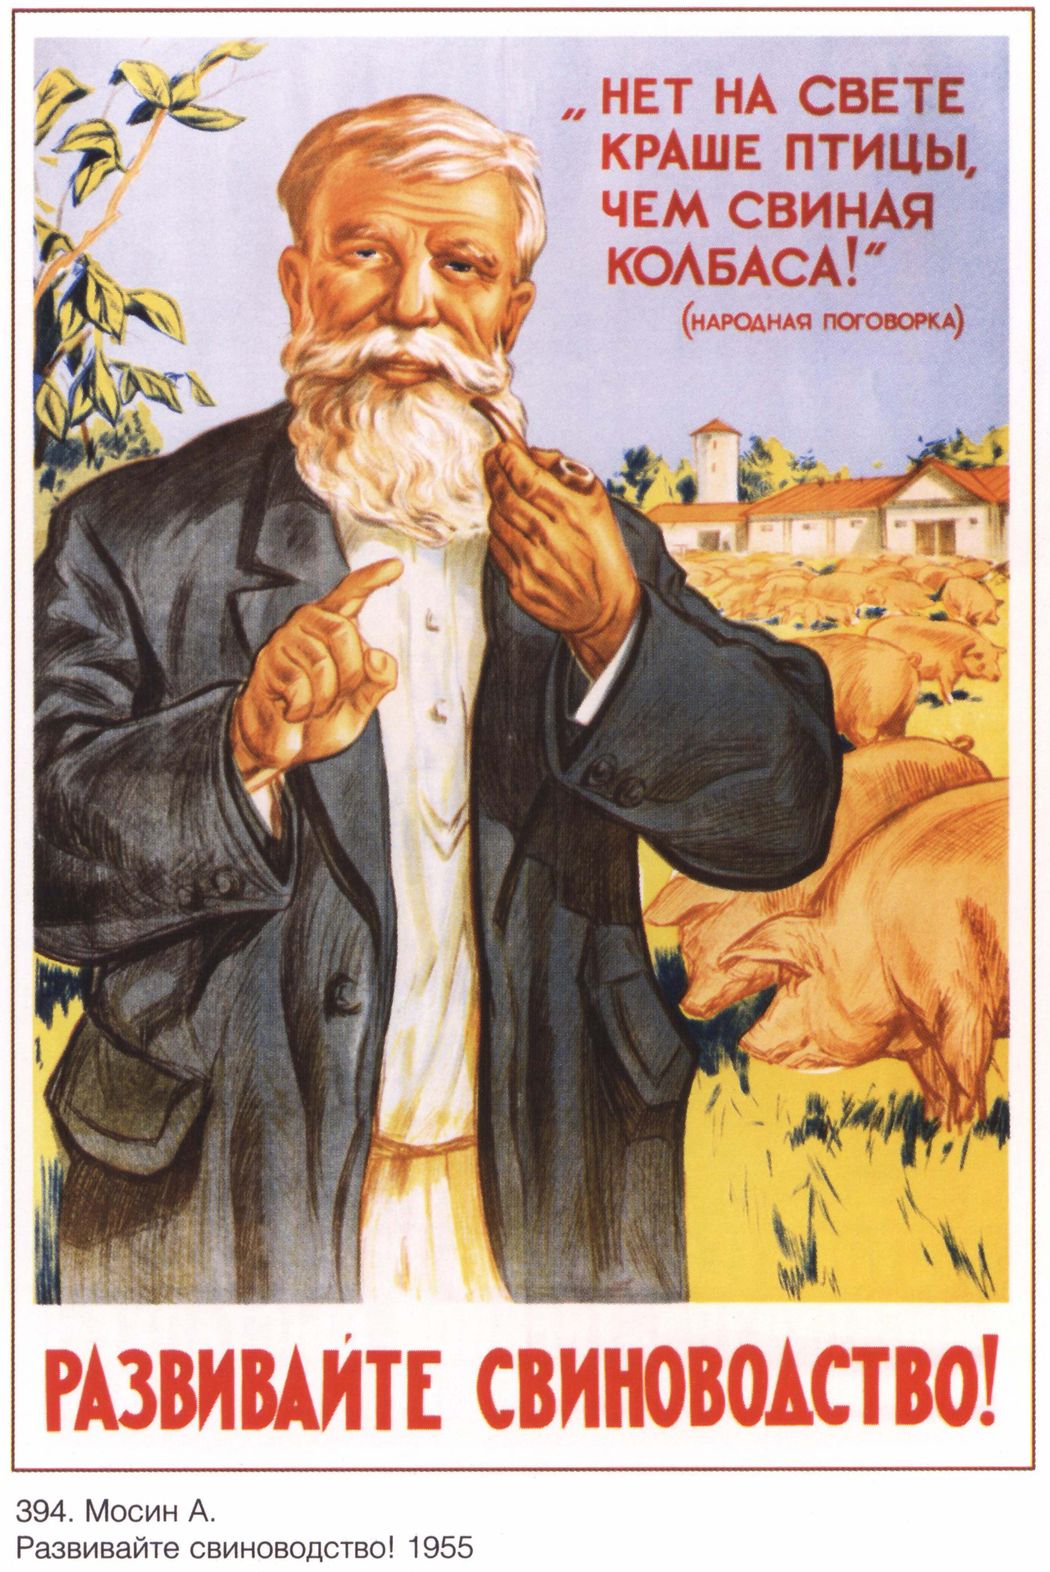 URSS 1955 Intensifier la production porcine